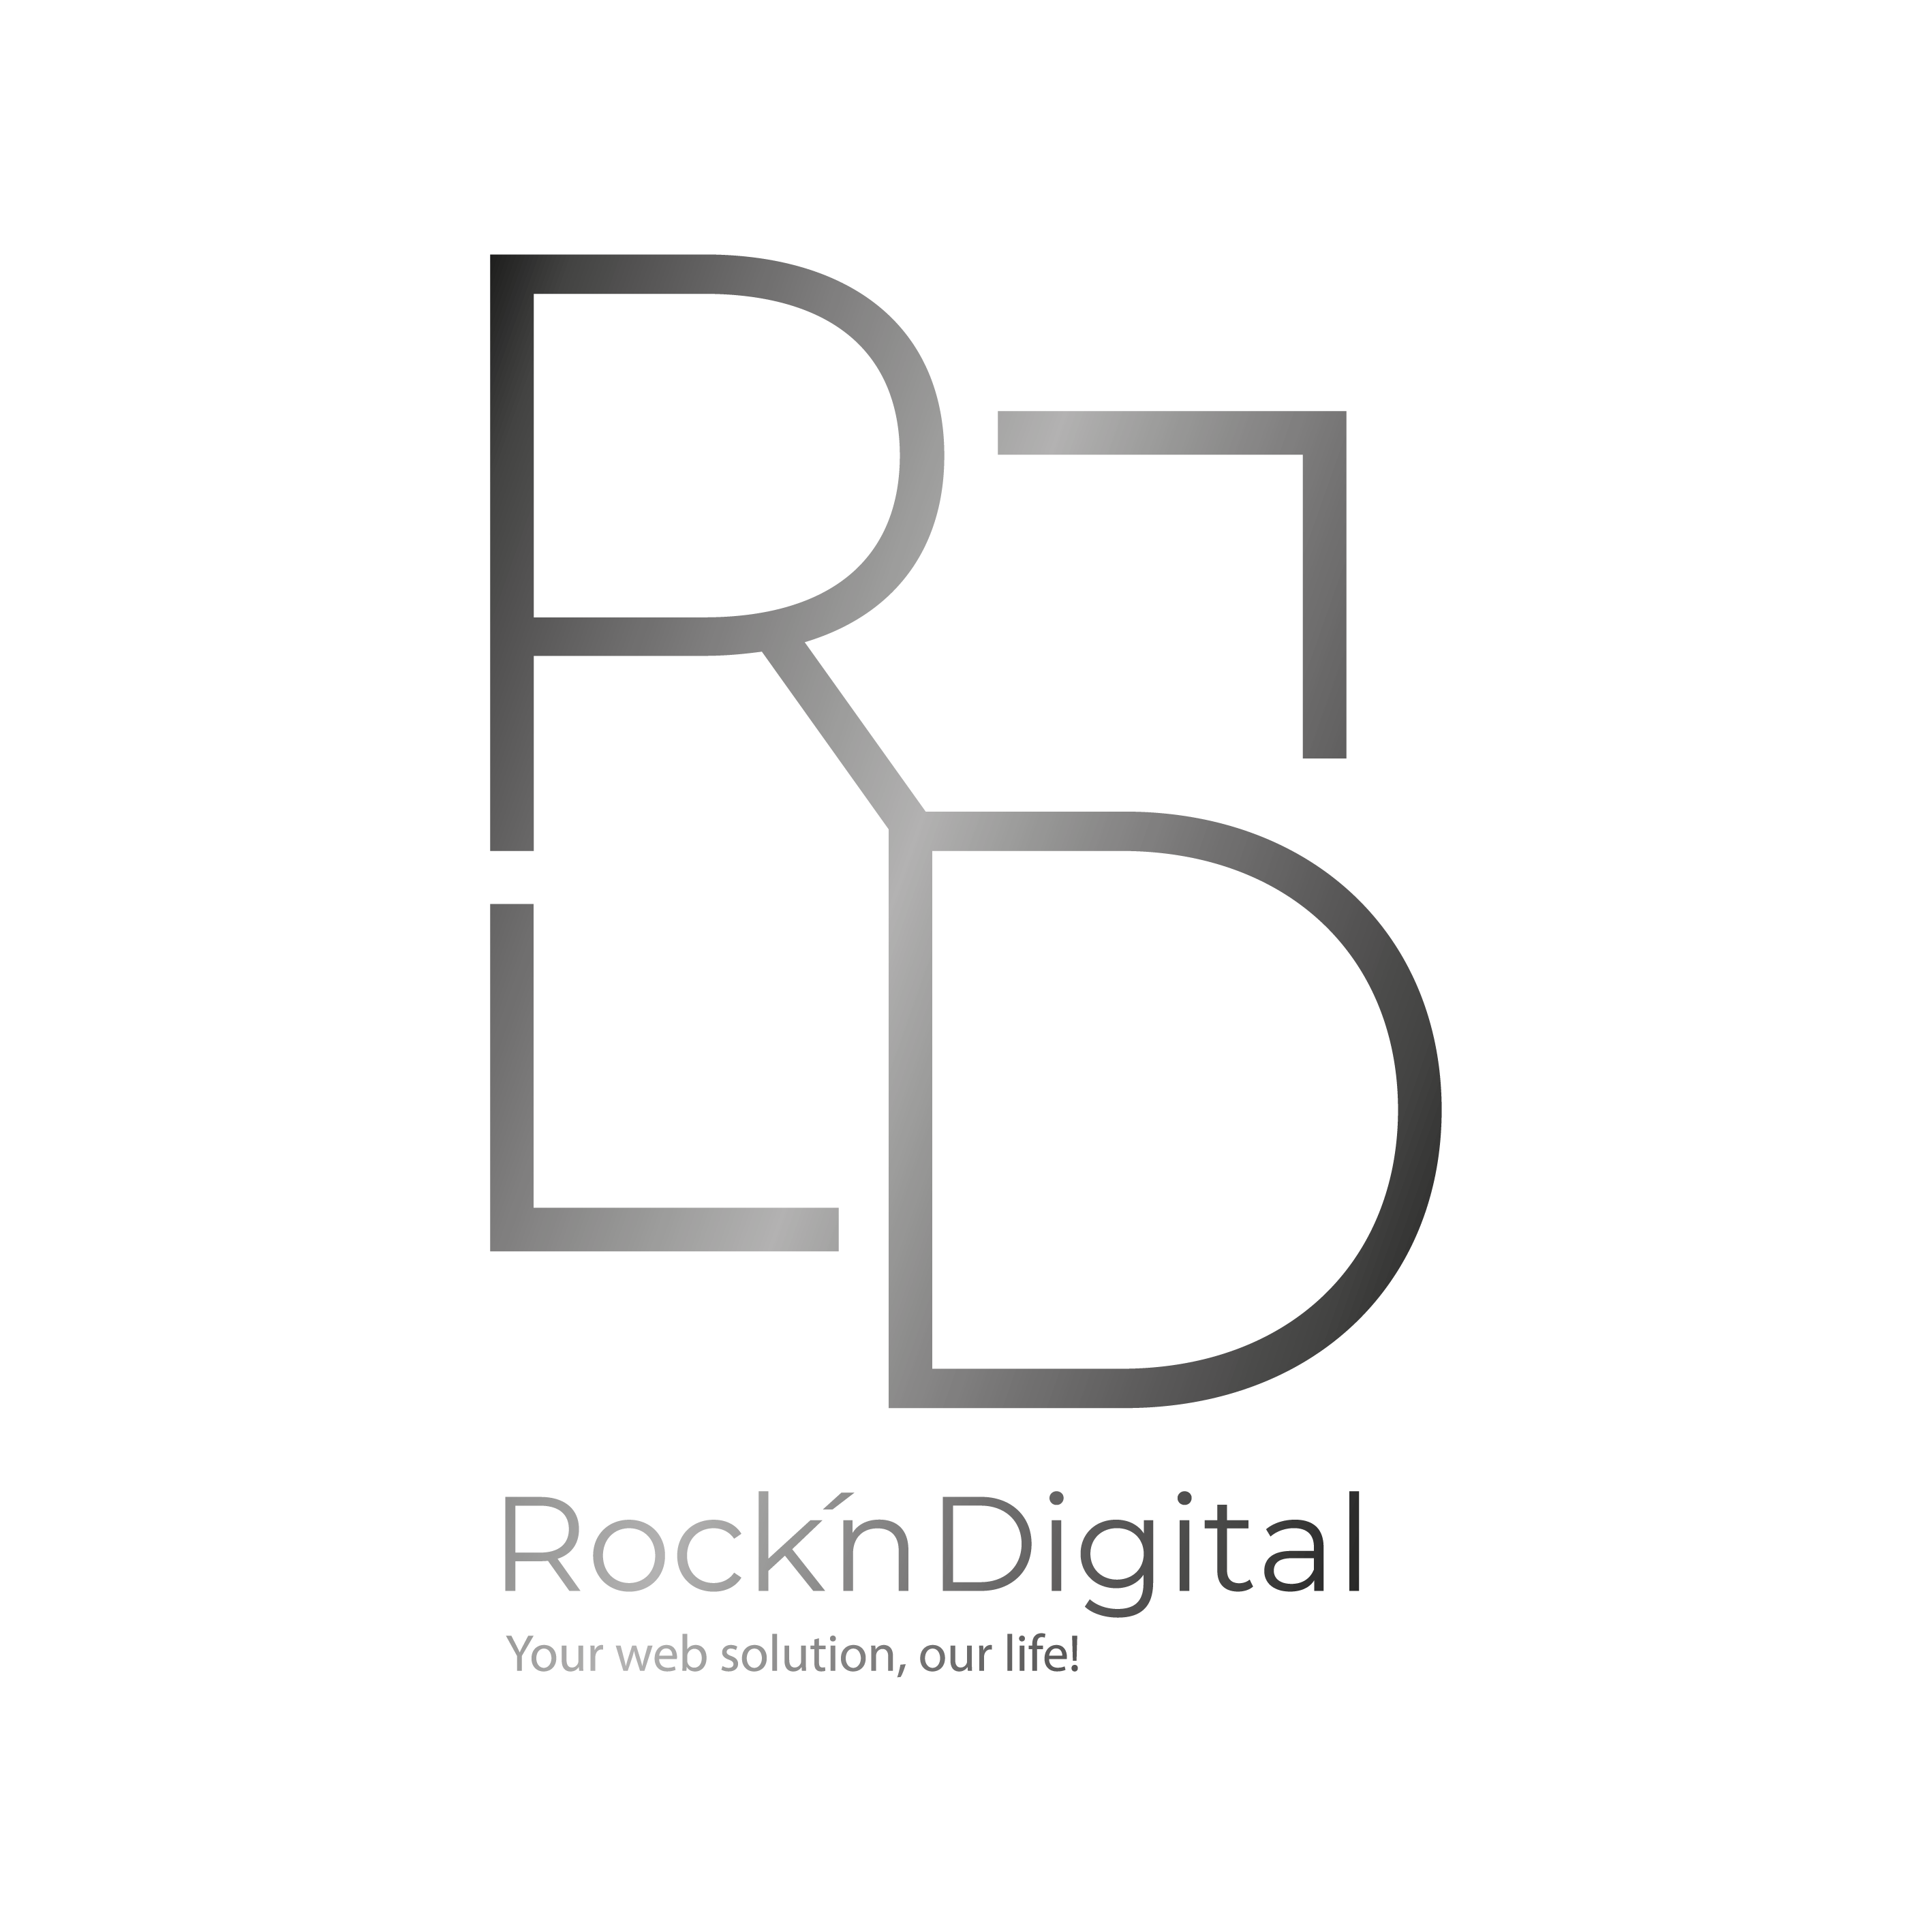 Rocking Digital: Because Digital Should Rock Your World